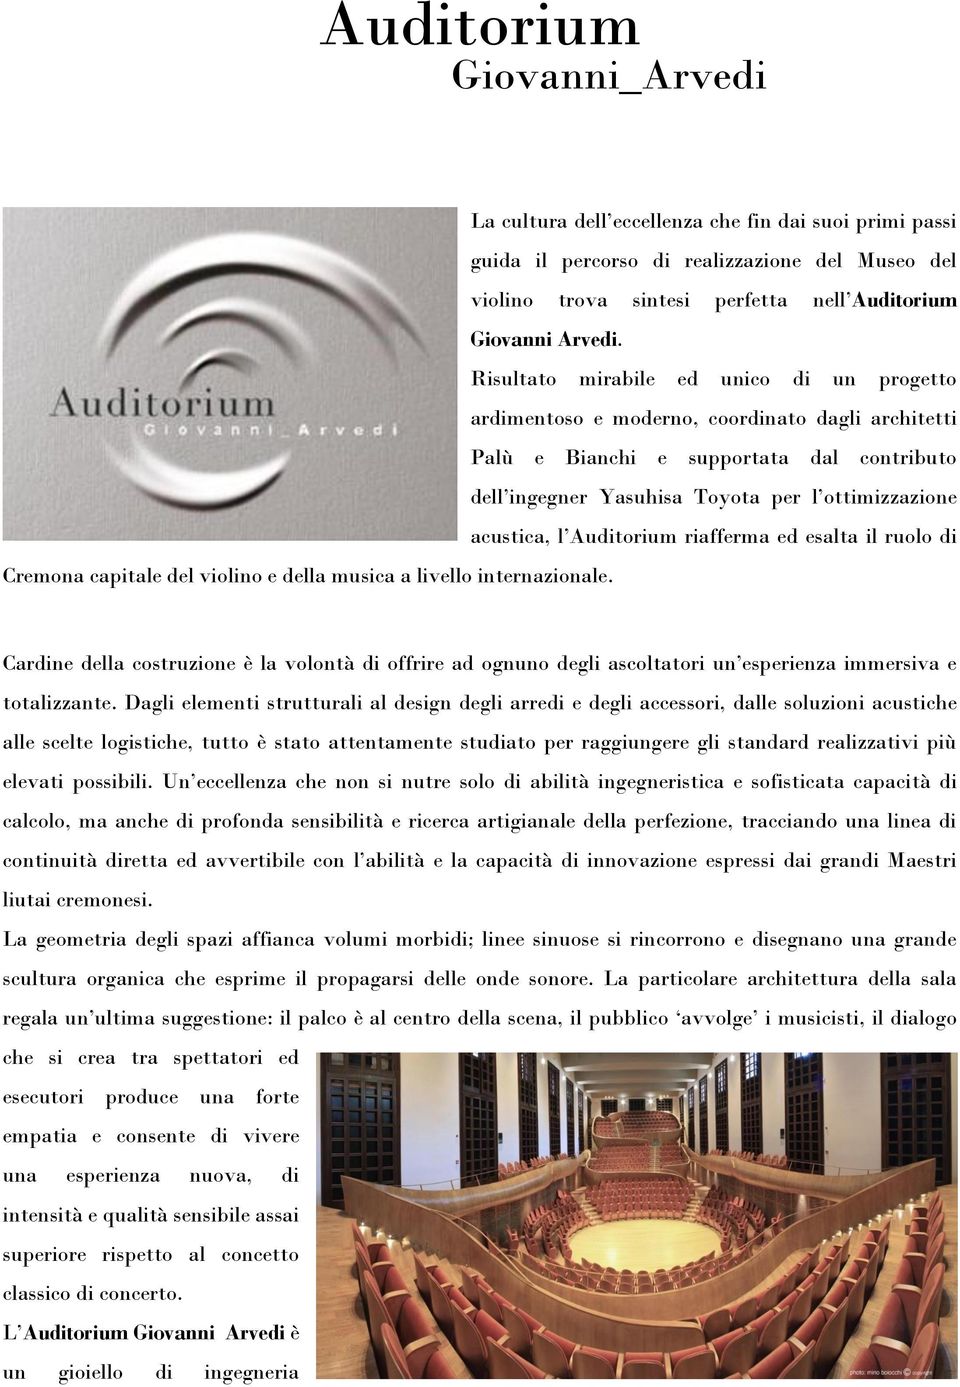 Auditorium riafferma ed esalta il ruolo di Cremona capitale del violino e della musica a livello internazionale.